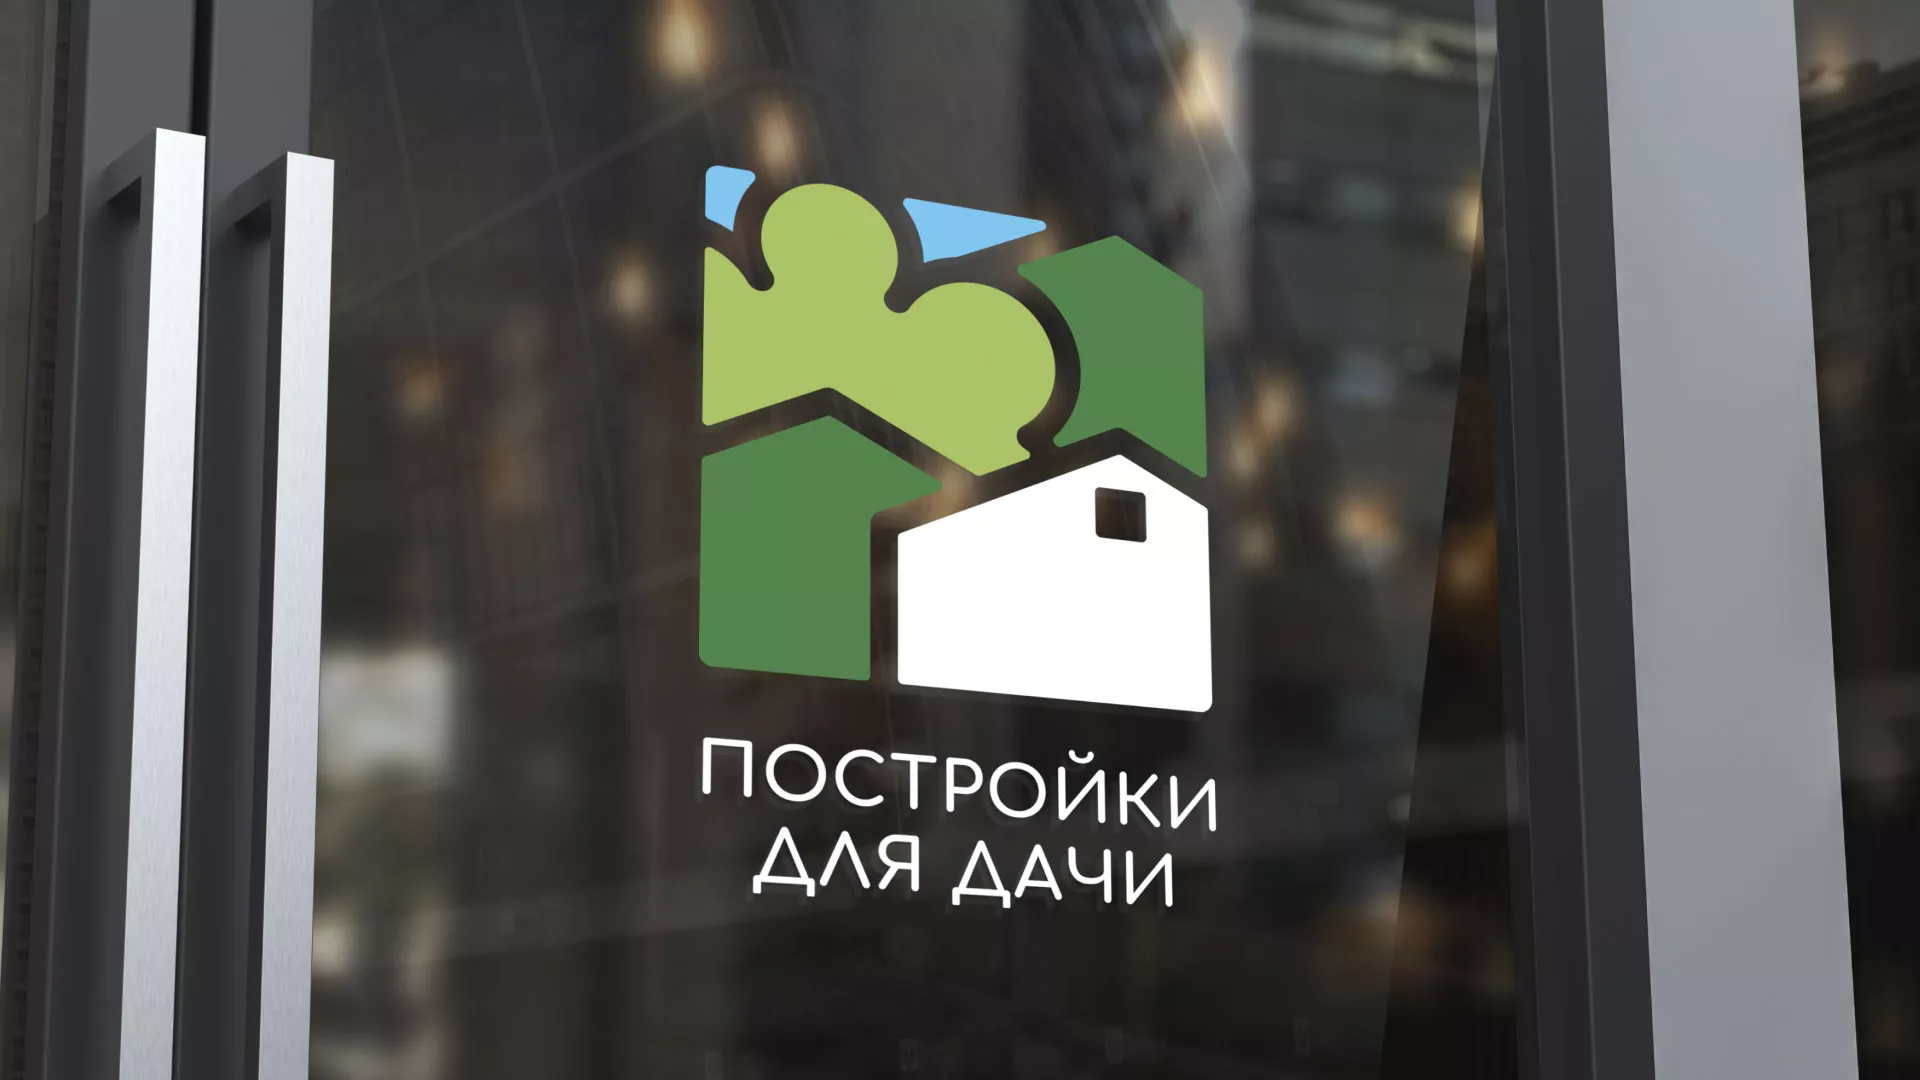 Разработка логотипа в Весьегонске для компании «Постройки для дачи»